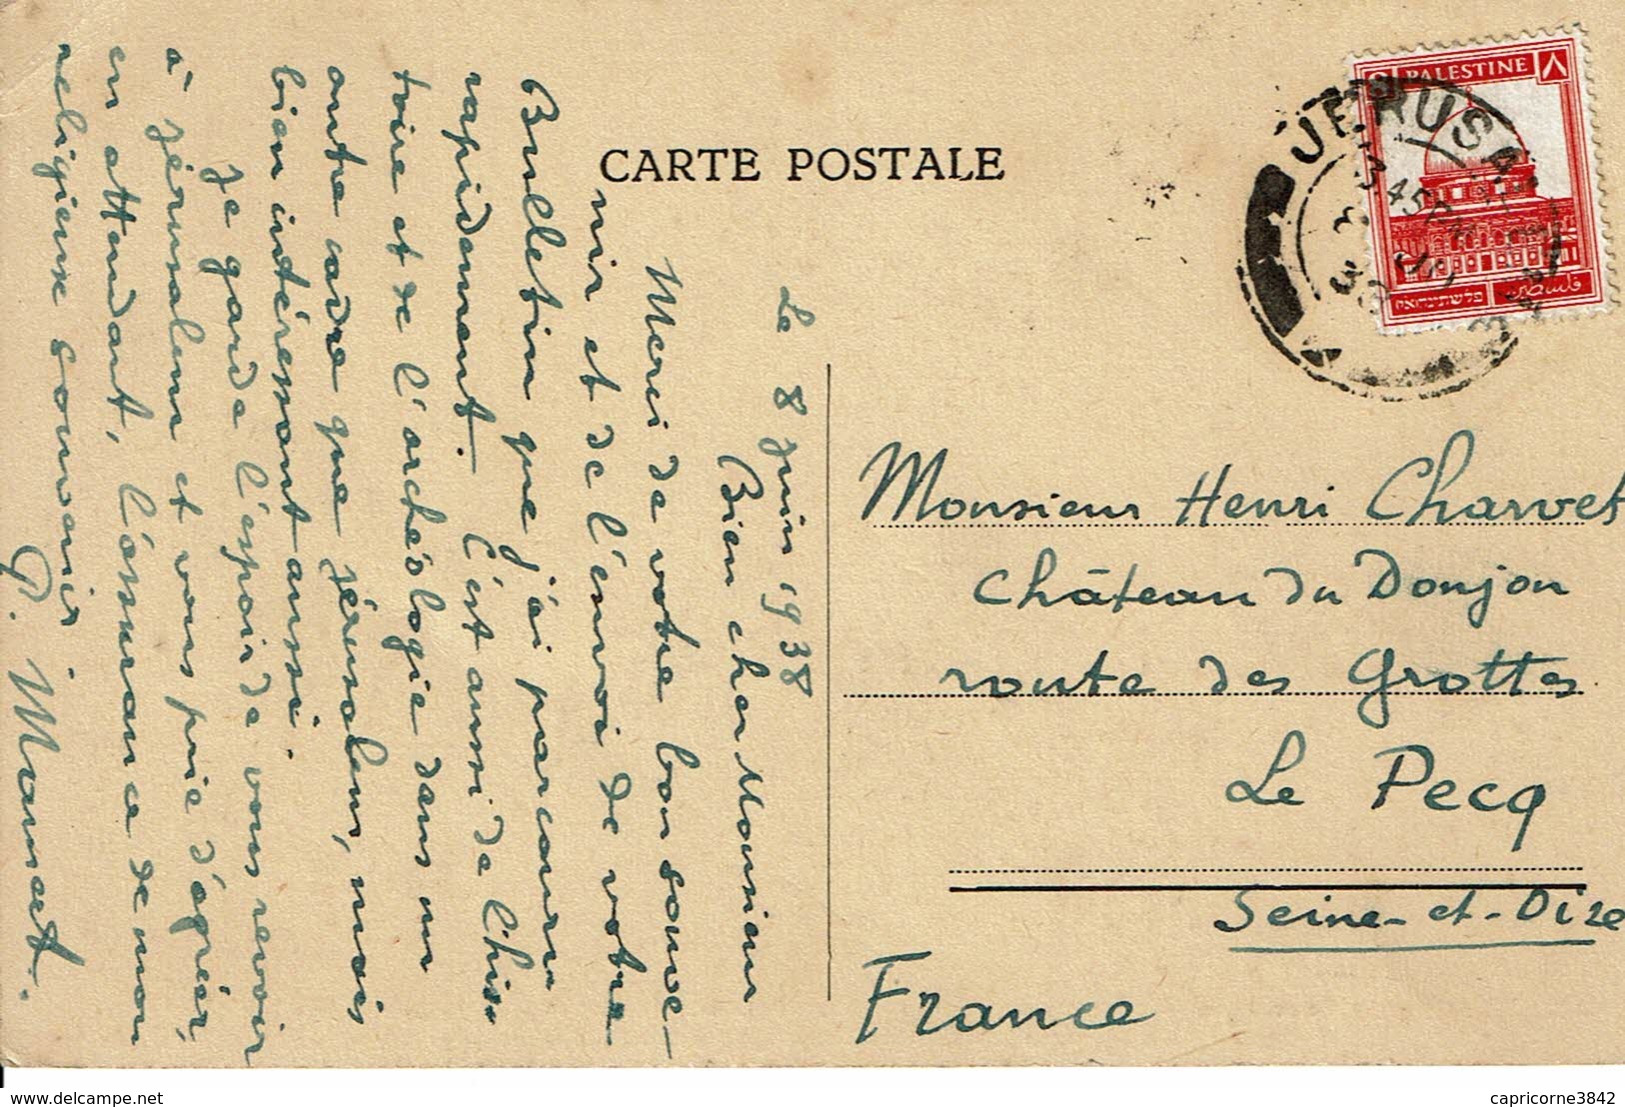 1938 - Carte Postale De Jérusalem Pour La France - Tp N° 69A Oblitération Jérusalem - Palestine